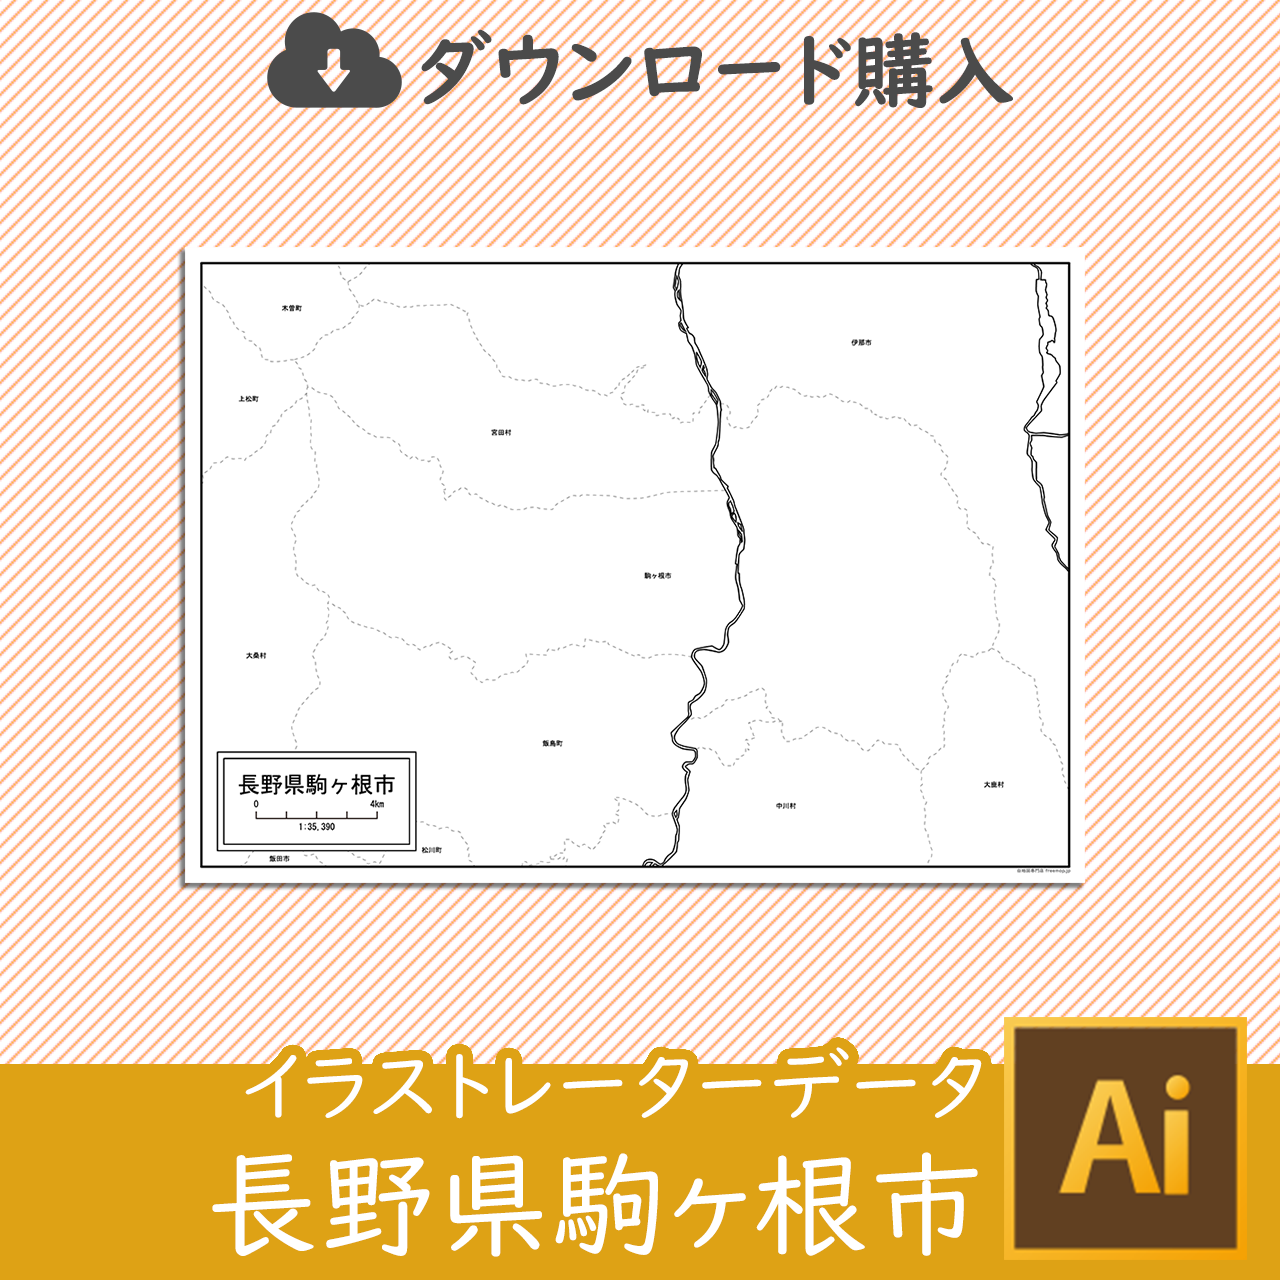 駒ヶ根市のaiデータのサムネイル画像